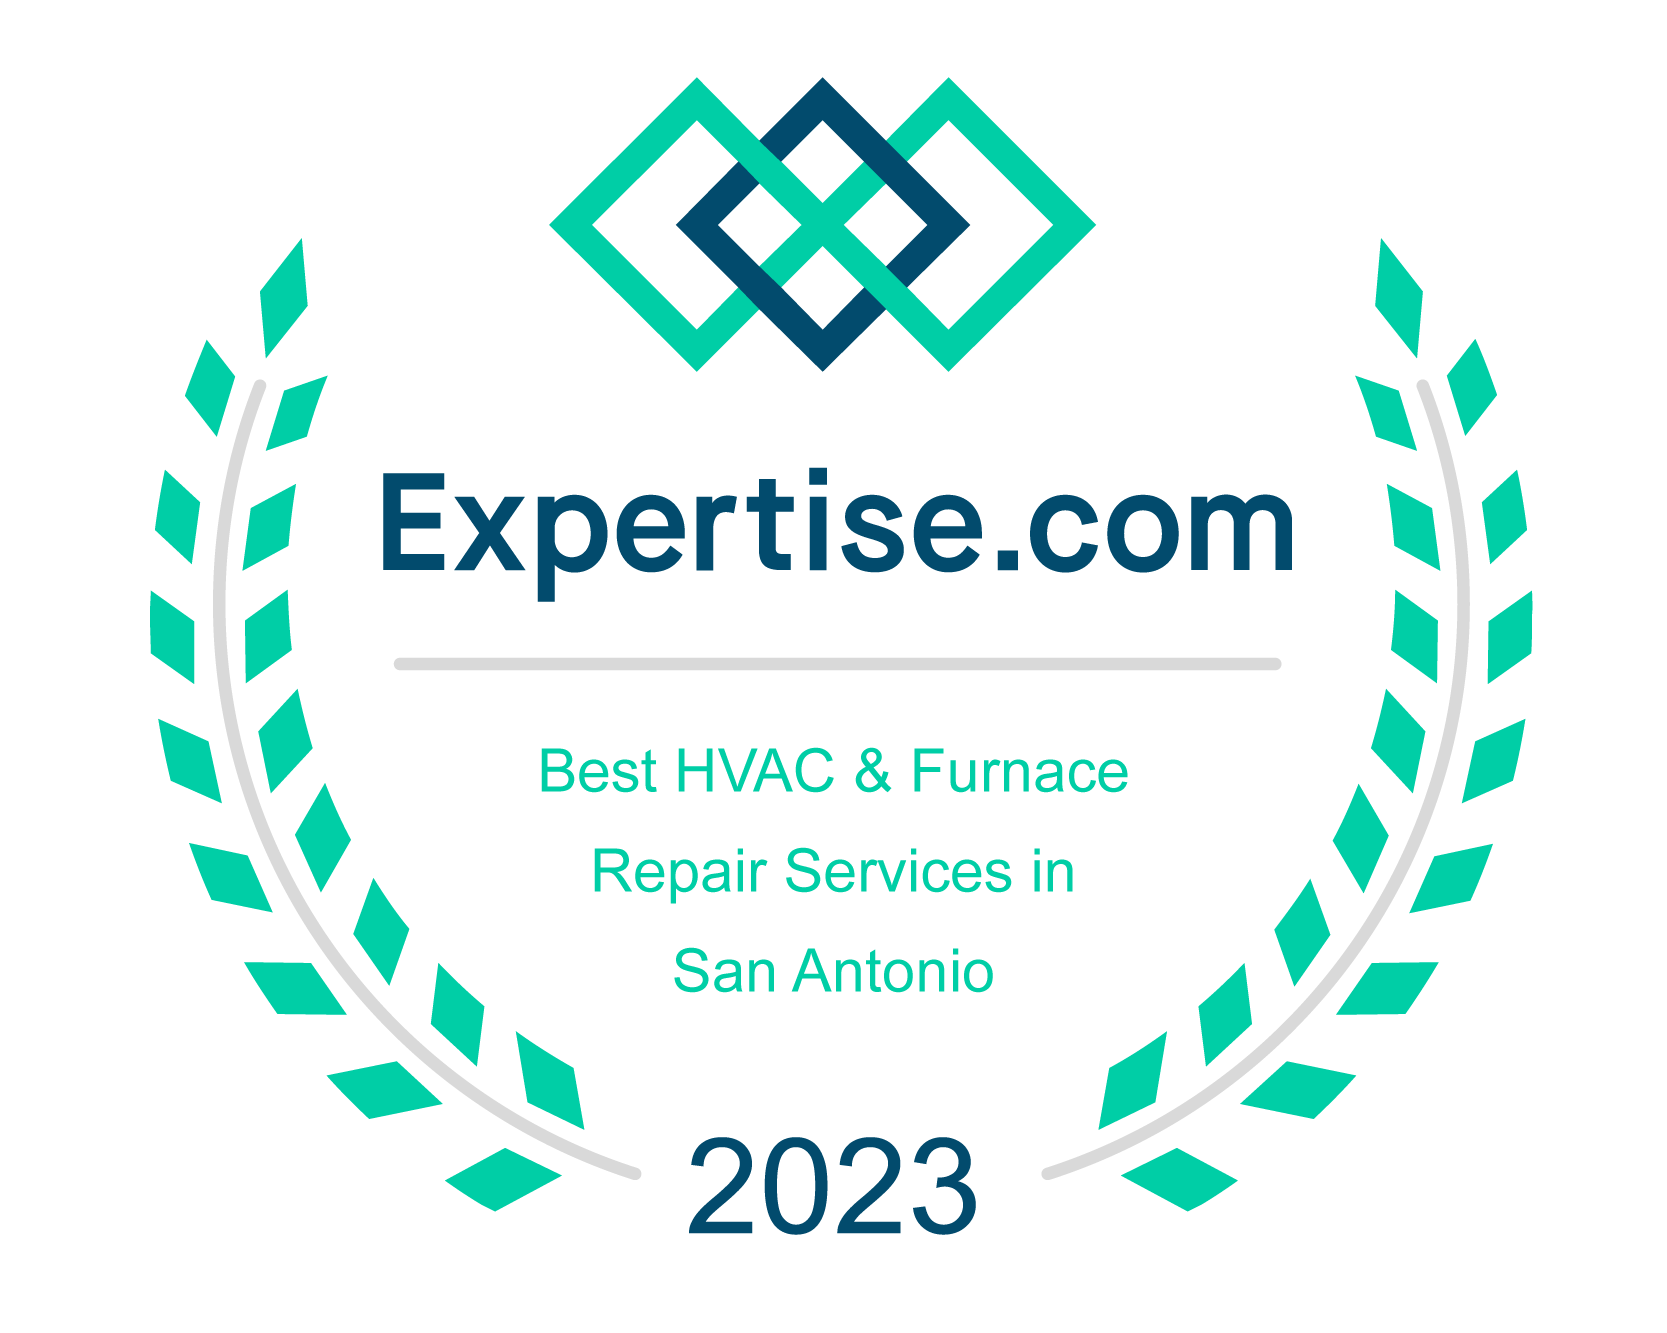 Expertise.com Best HVAC & Furnace Repair Services in San Antonio